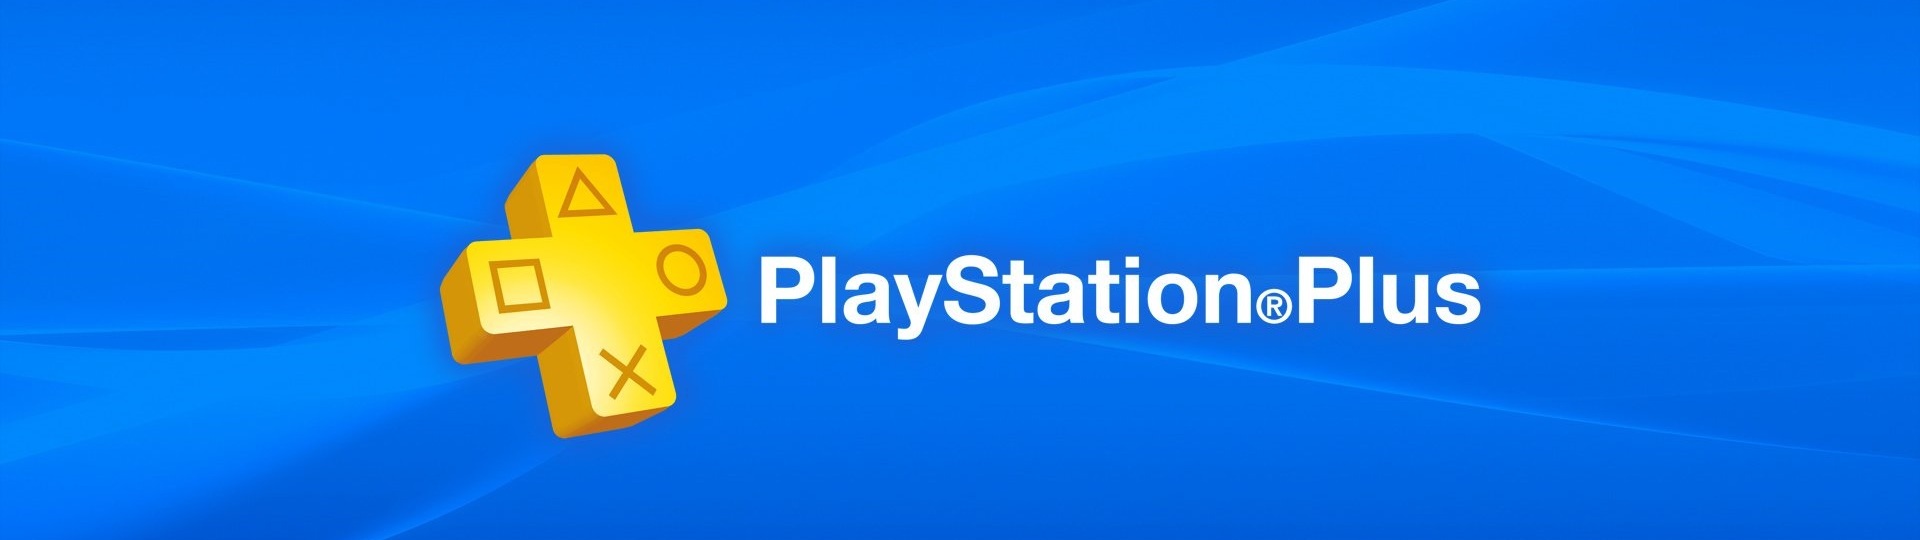 Sony zřejmě plánuje dražší verzi PS Plus | Spekulace